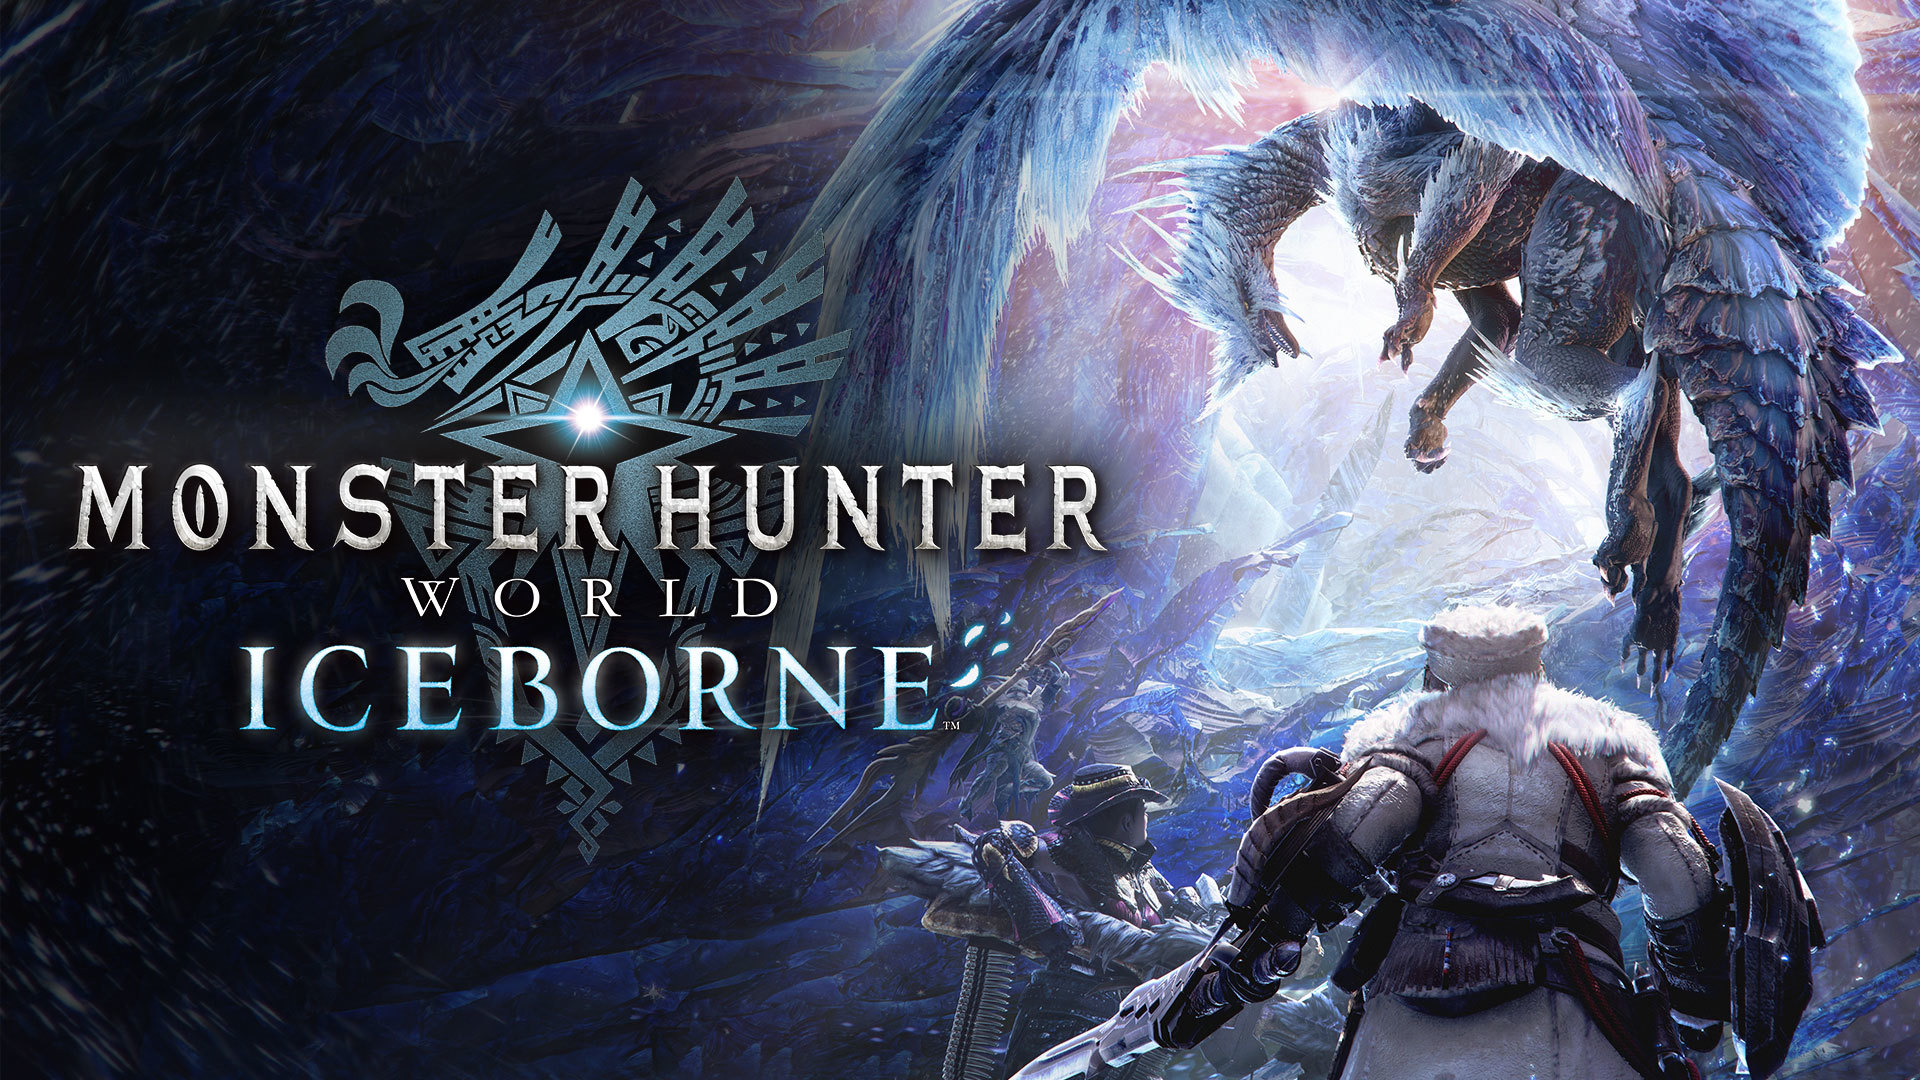 Monster Hunter World PC ganha data de lançamento